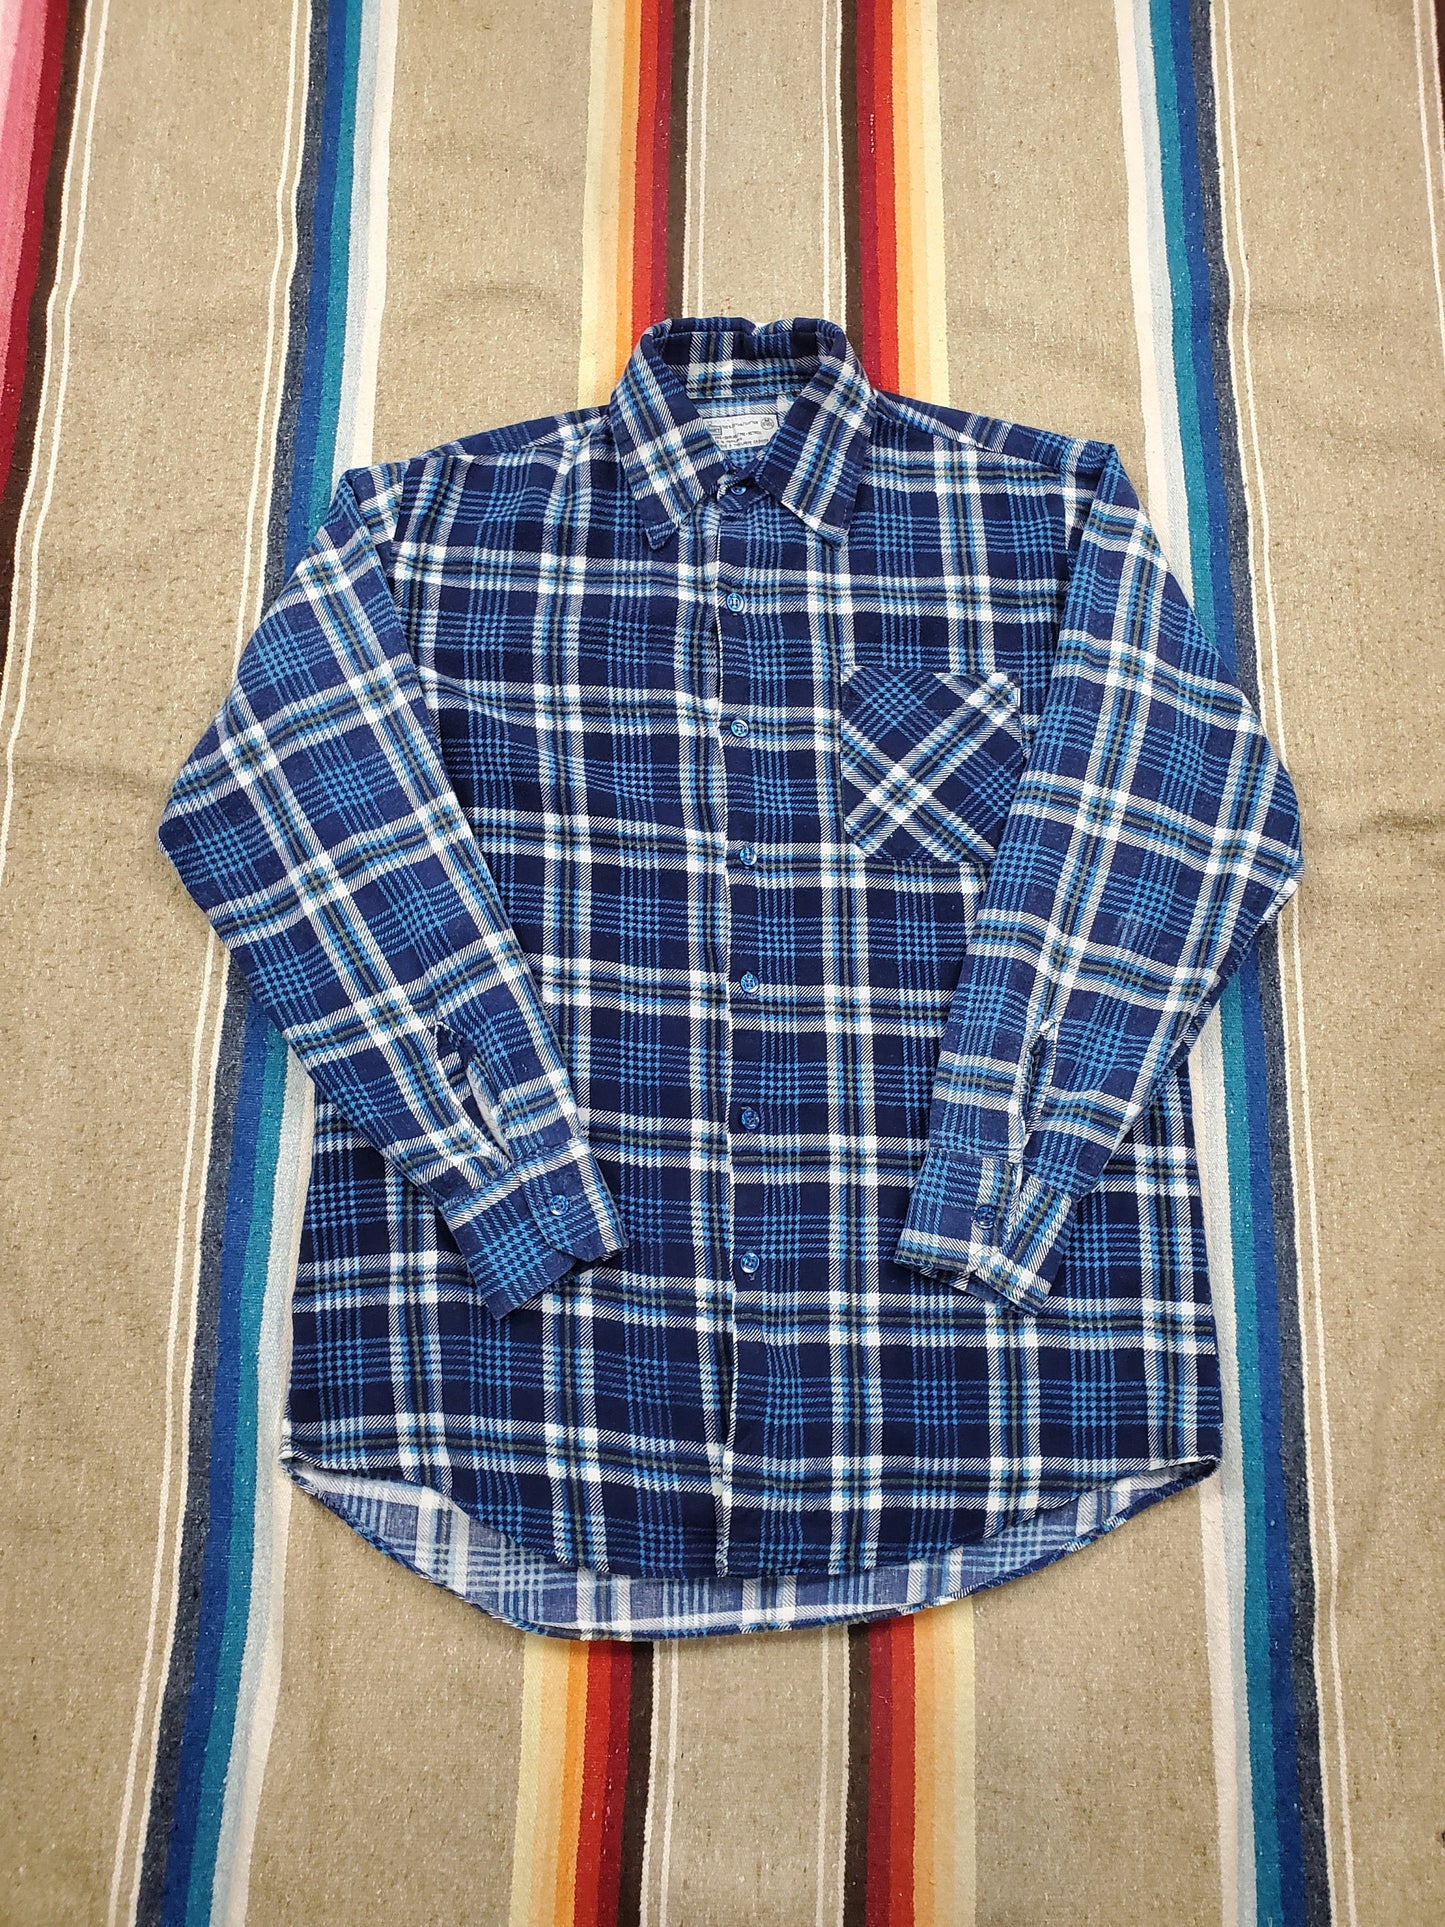 1980s K-Mart Blue Plaid Printed Cotton Flannel Shirt Size M/L